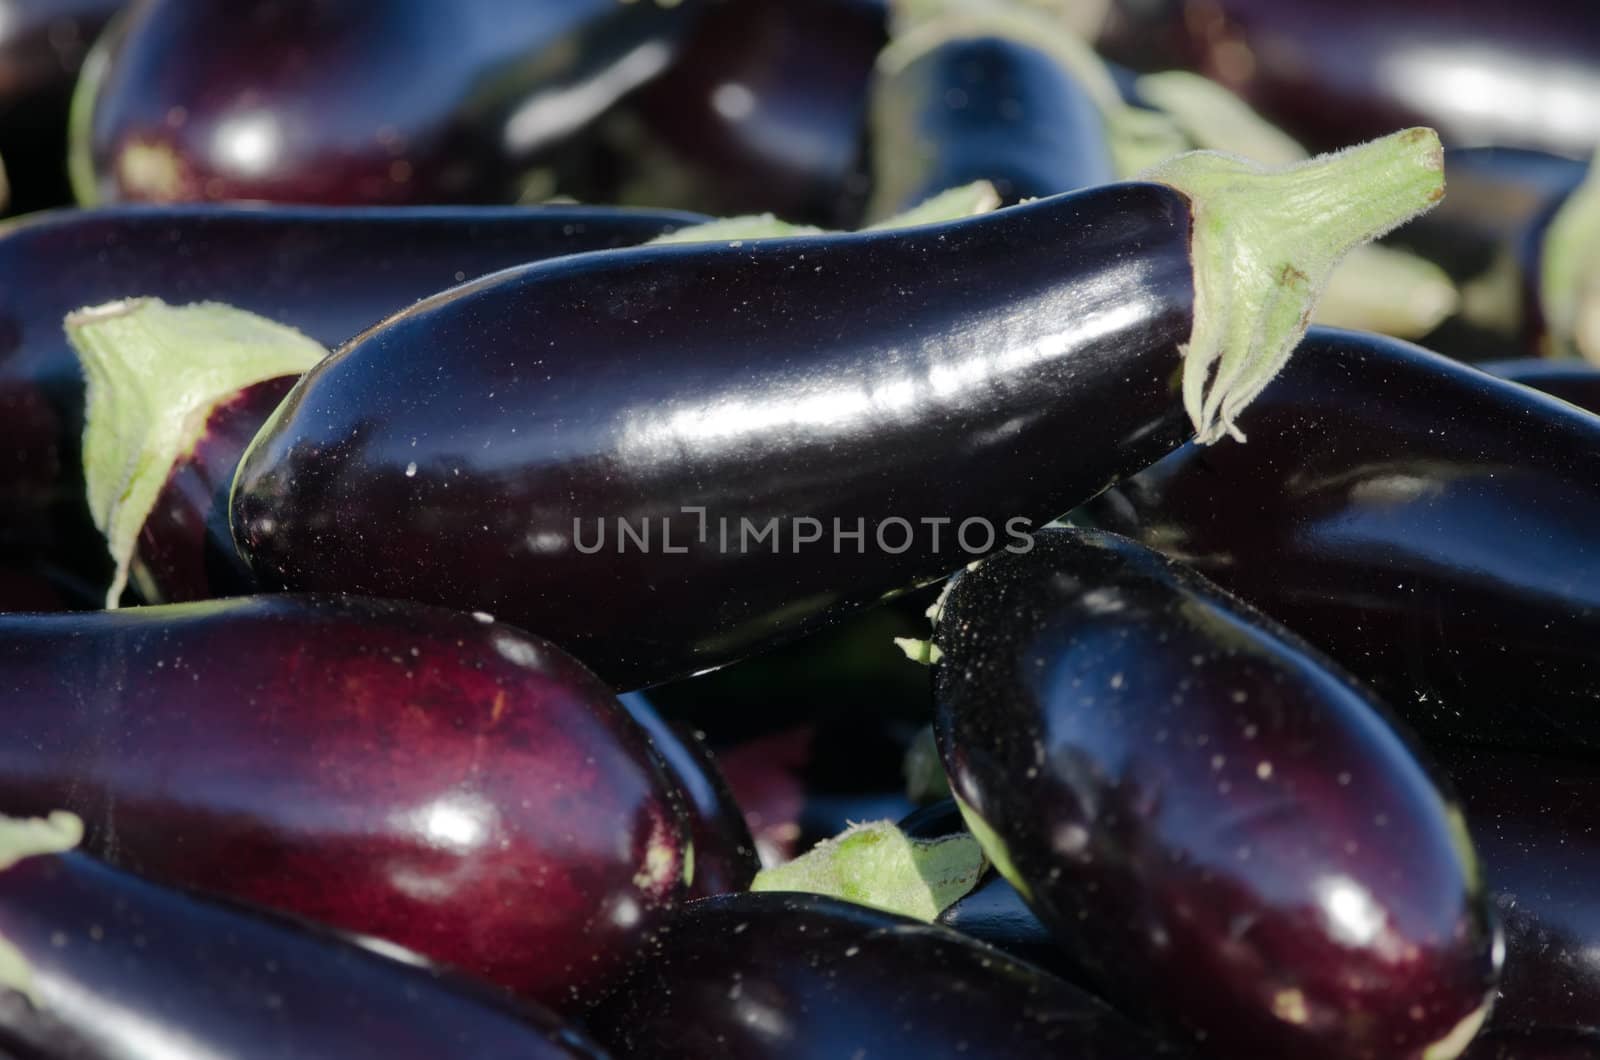 the eggplants